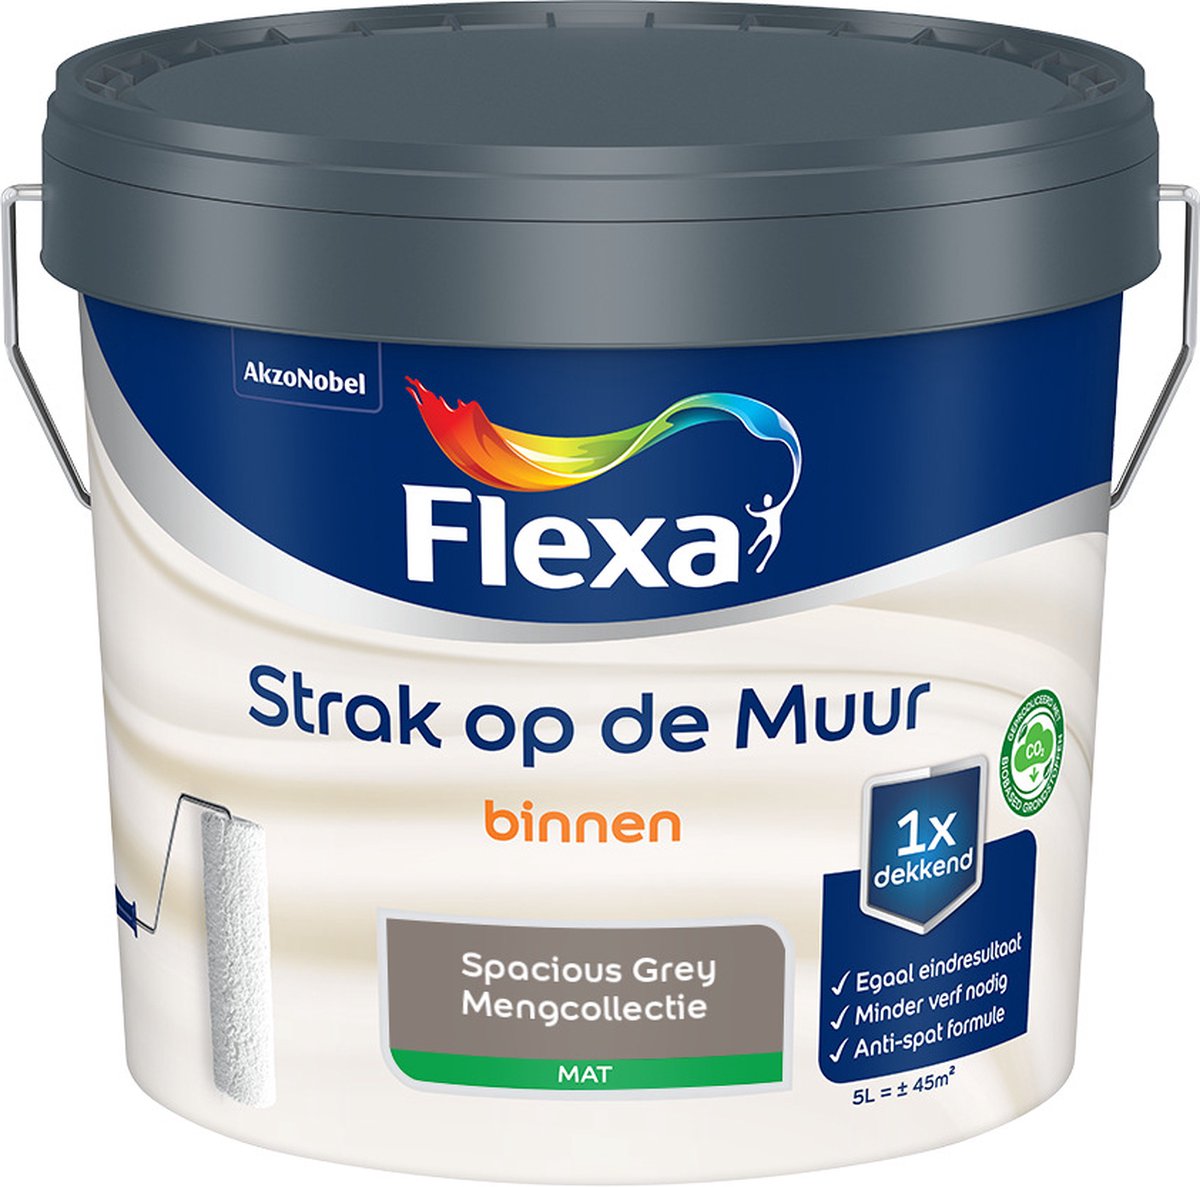 Flexa Strak op de muur - Muurverf - Mengcollectie - Spacious Grey - 5 Liter